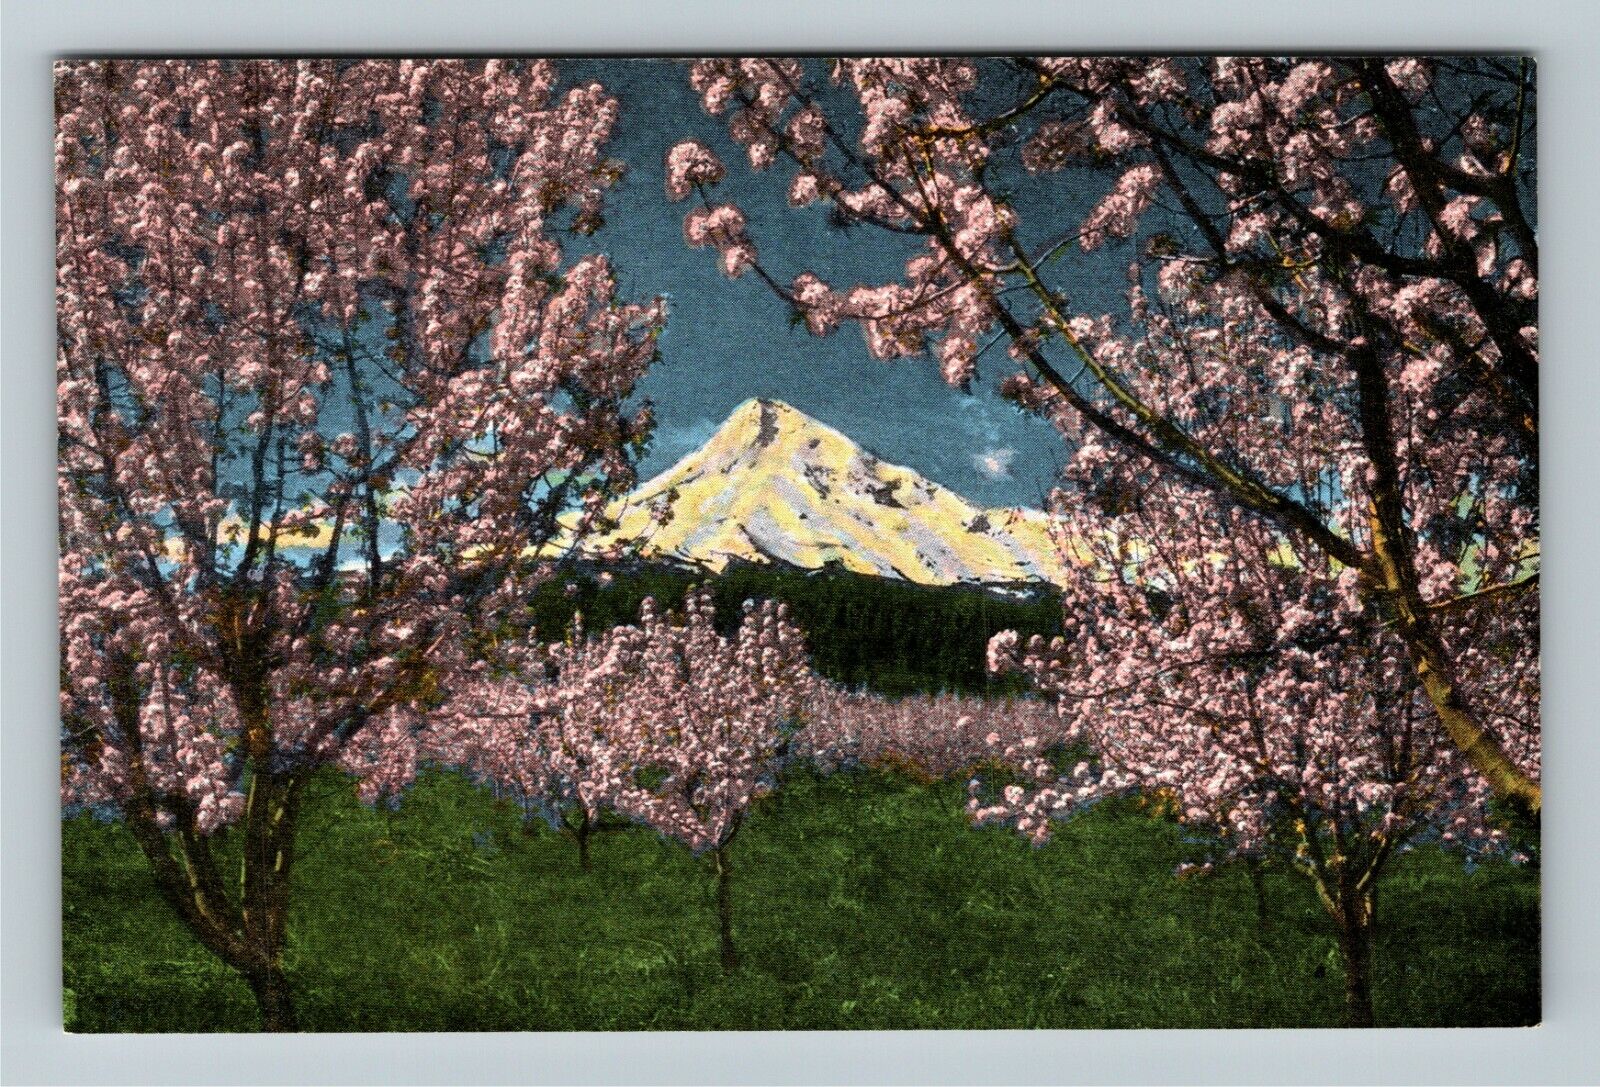 OR-Oregon Mt. Hood Framed in Blooming Apple Blossom Trees Vintage Postcard